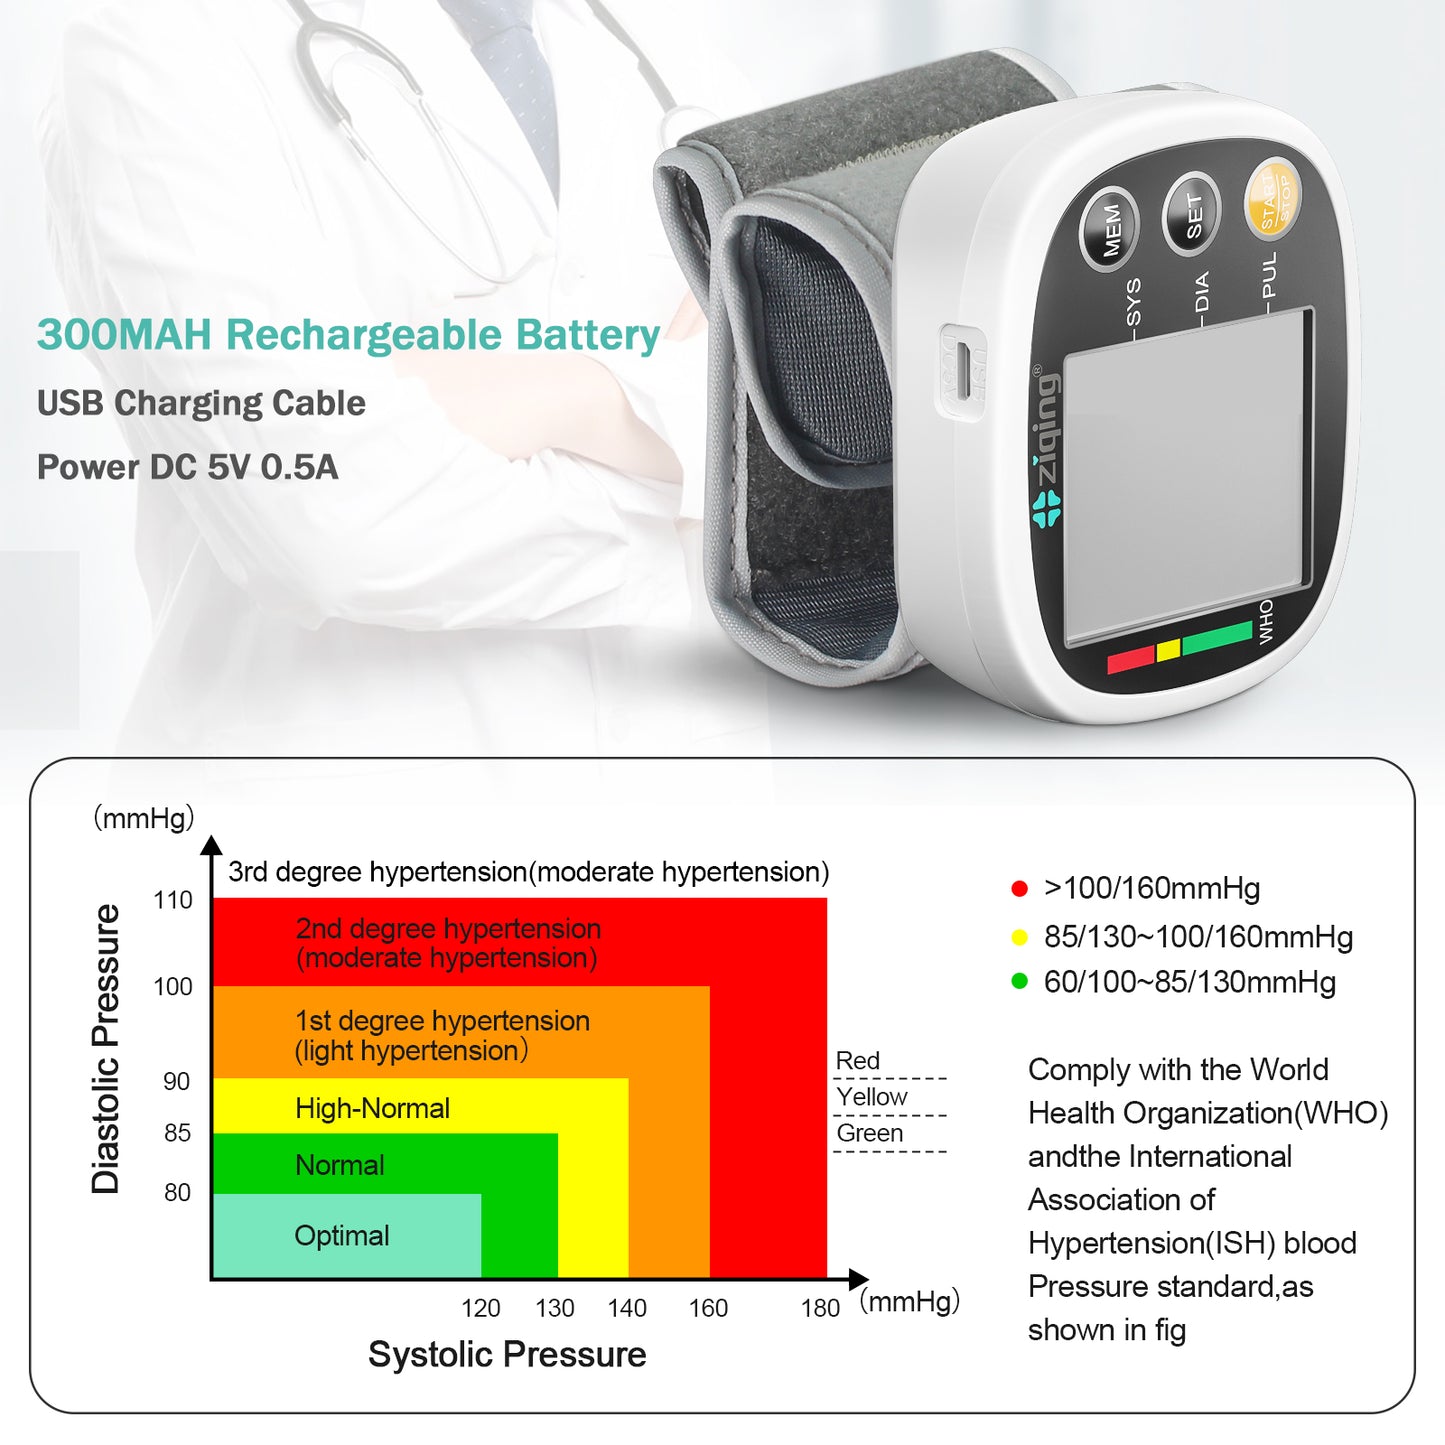 Monitor elegante de la presión arterial de la muñeca del esfigmomanómetro del proveedor de dispositivos médicos del hogar 